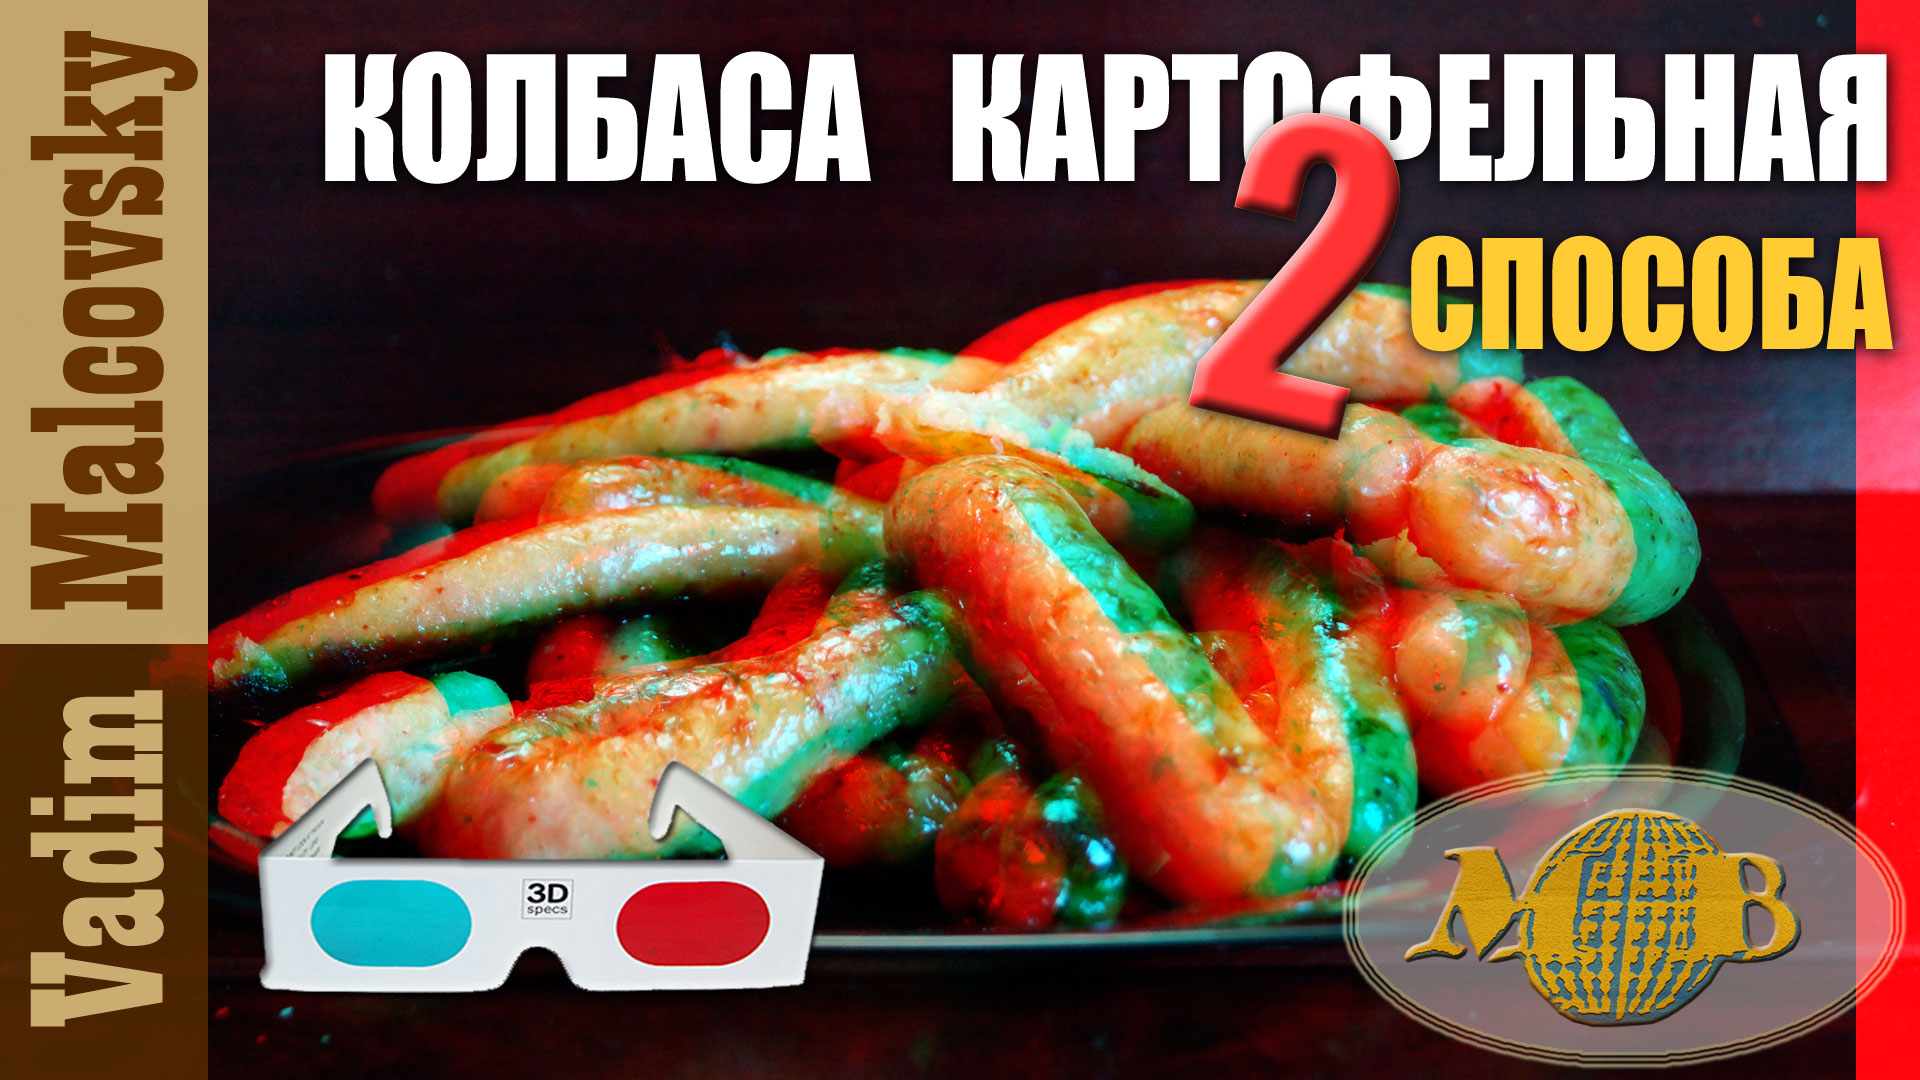 3D serei red-ctan Колбаса картофельная со свининой 2 способа. Мальковский Вадим